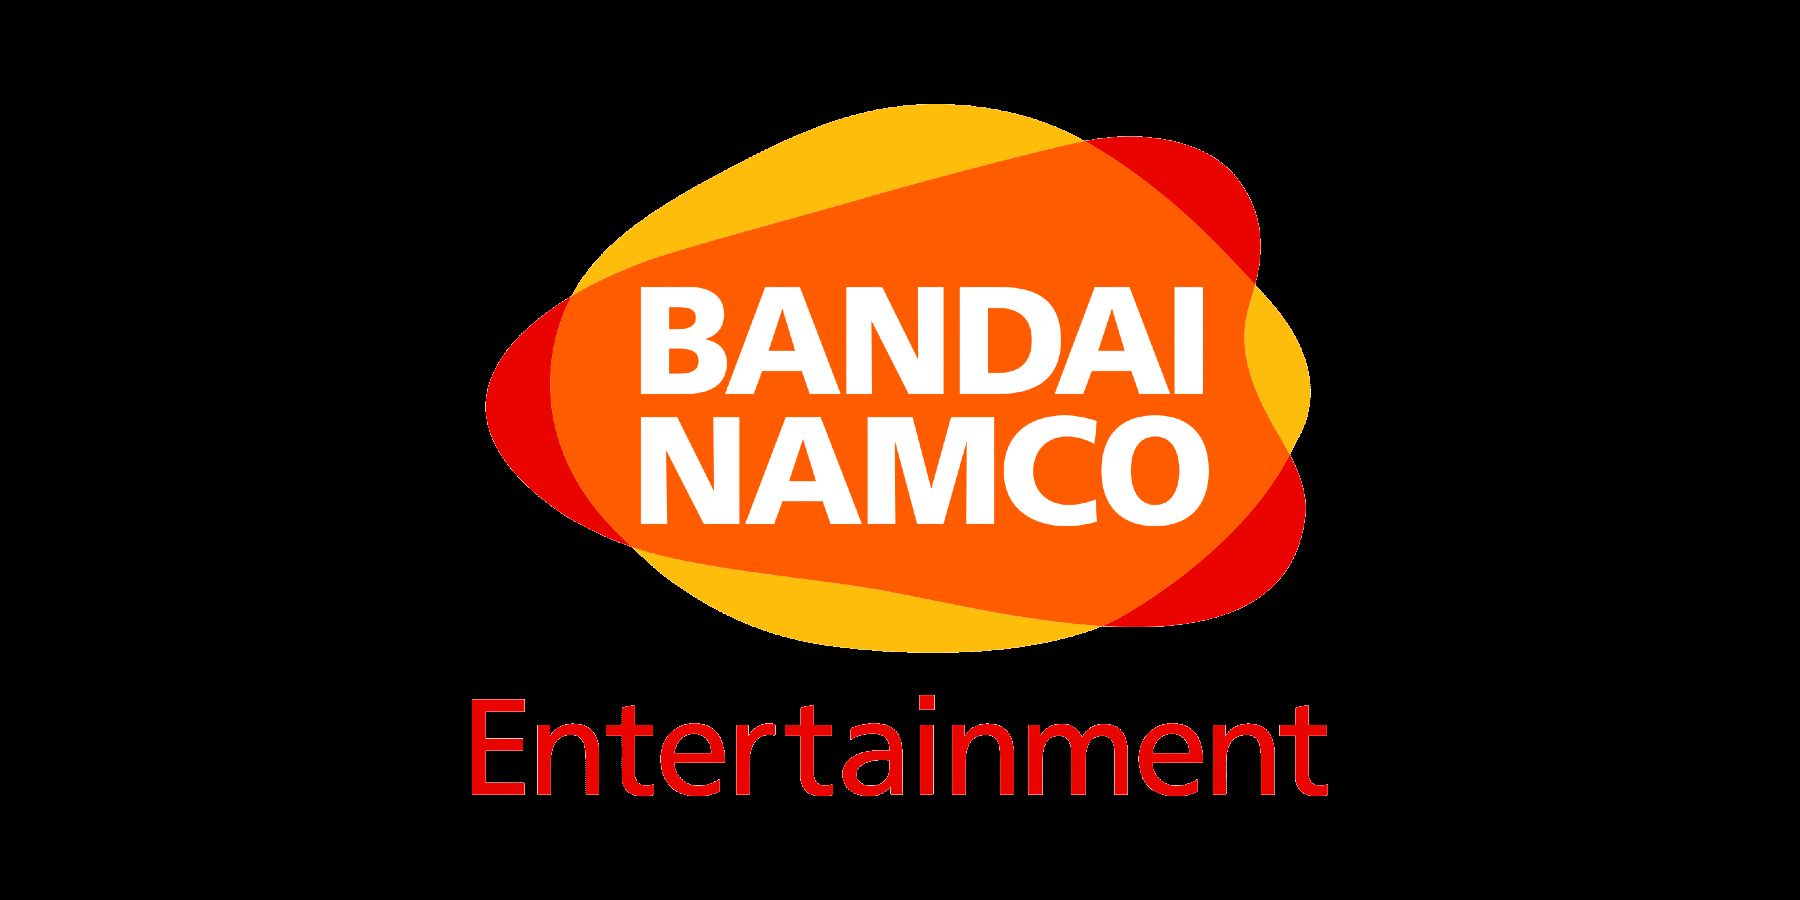 Bandai Namco a un nouveau logo